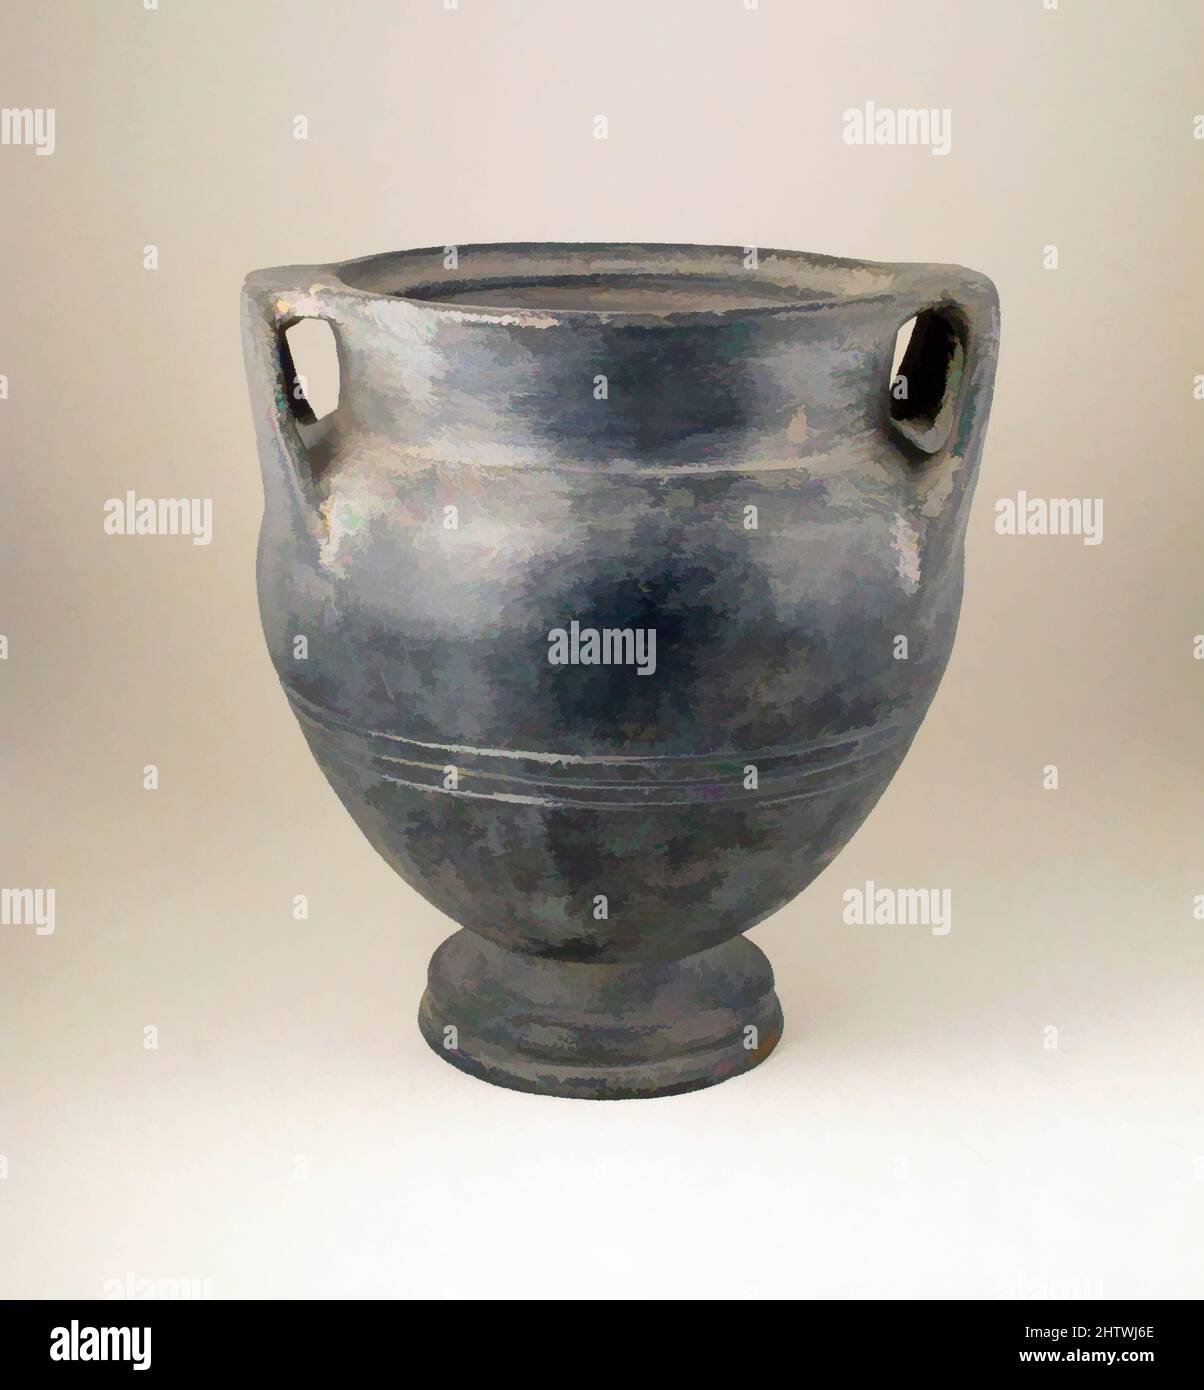 Vase Mit Deckel Stockfotos und -bilder Kaufen - Alamy